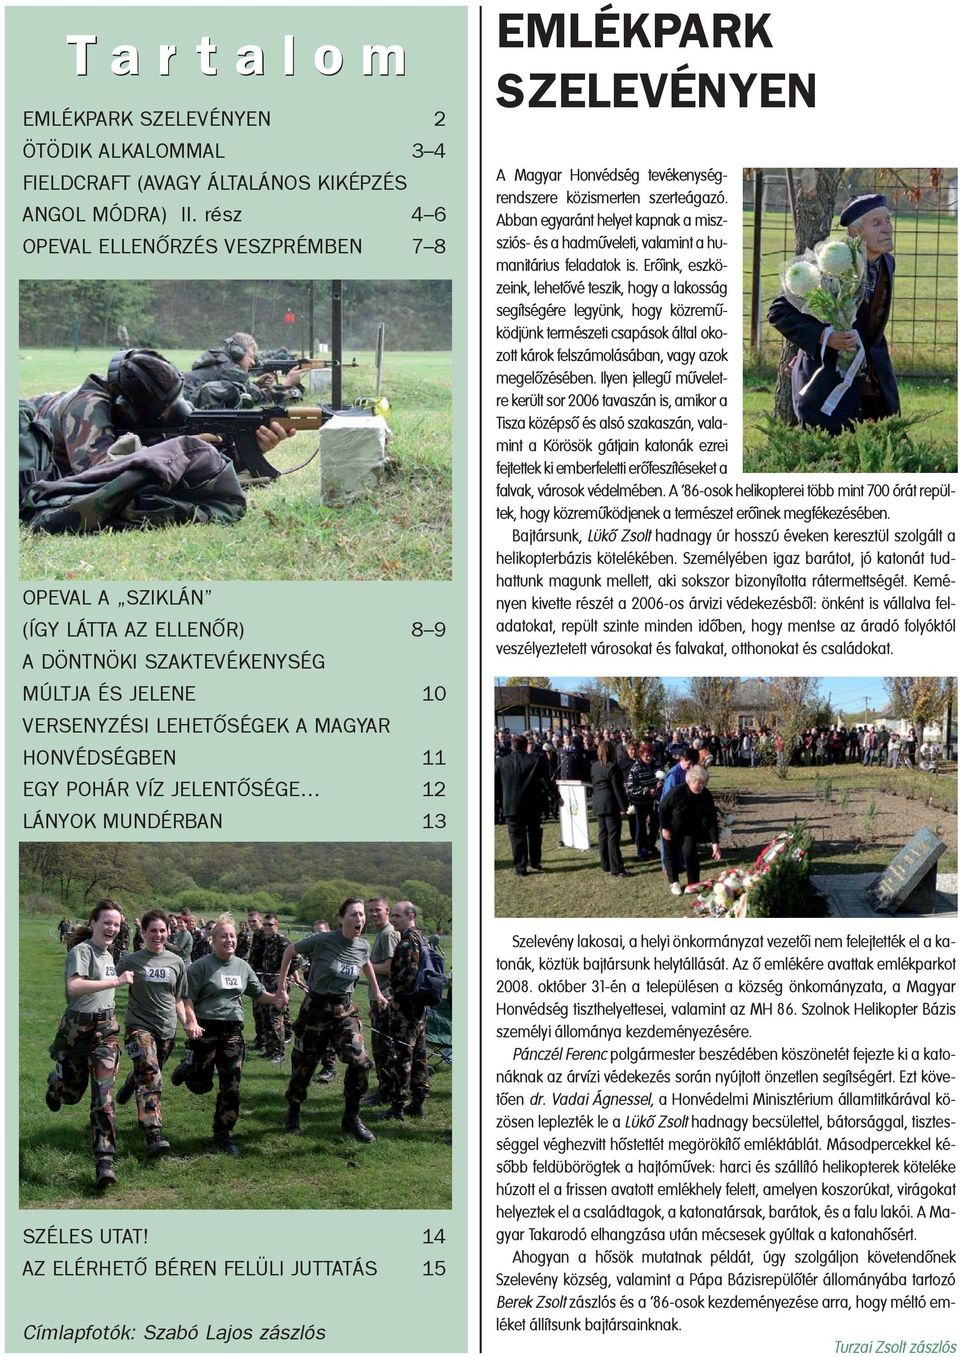 JELENTÕSÉGE 12 LÁNYOK MUNDÉRBAN 13 EMLÉKPARK SZELEVÉNYEN A Magyar Honvédség tevékenységrendszere közismerten szerteágazó.